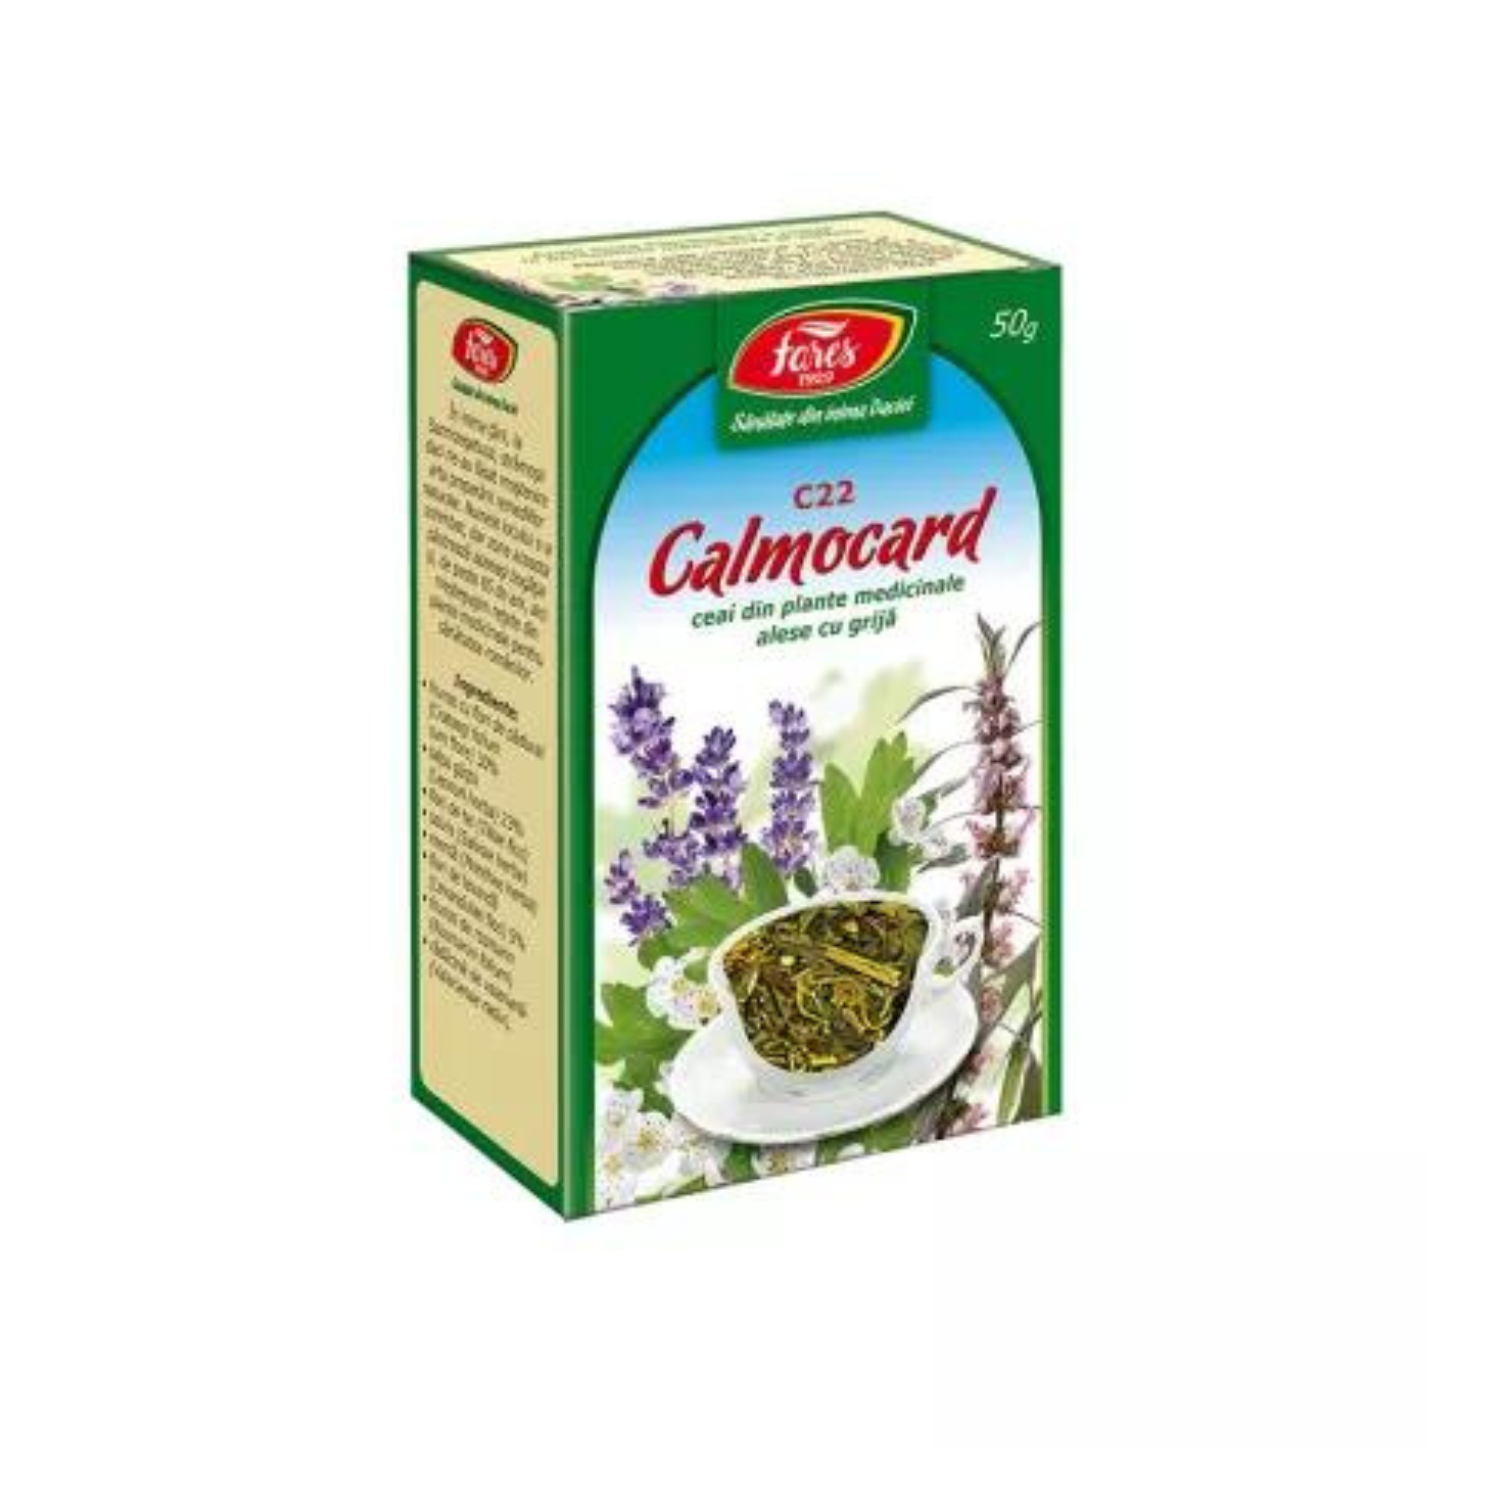 Ceai Calmocard, 50 g, Fares